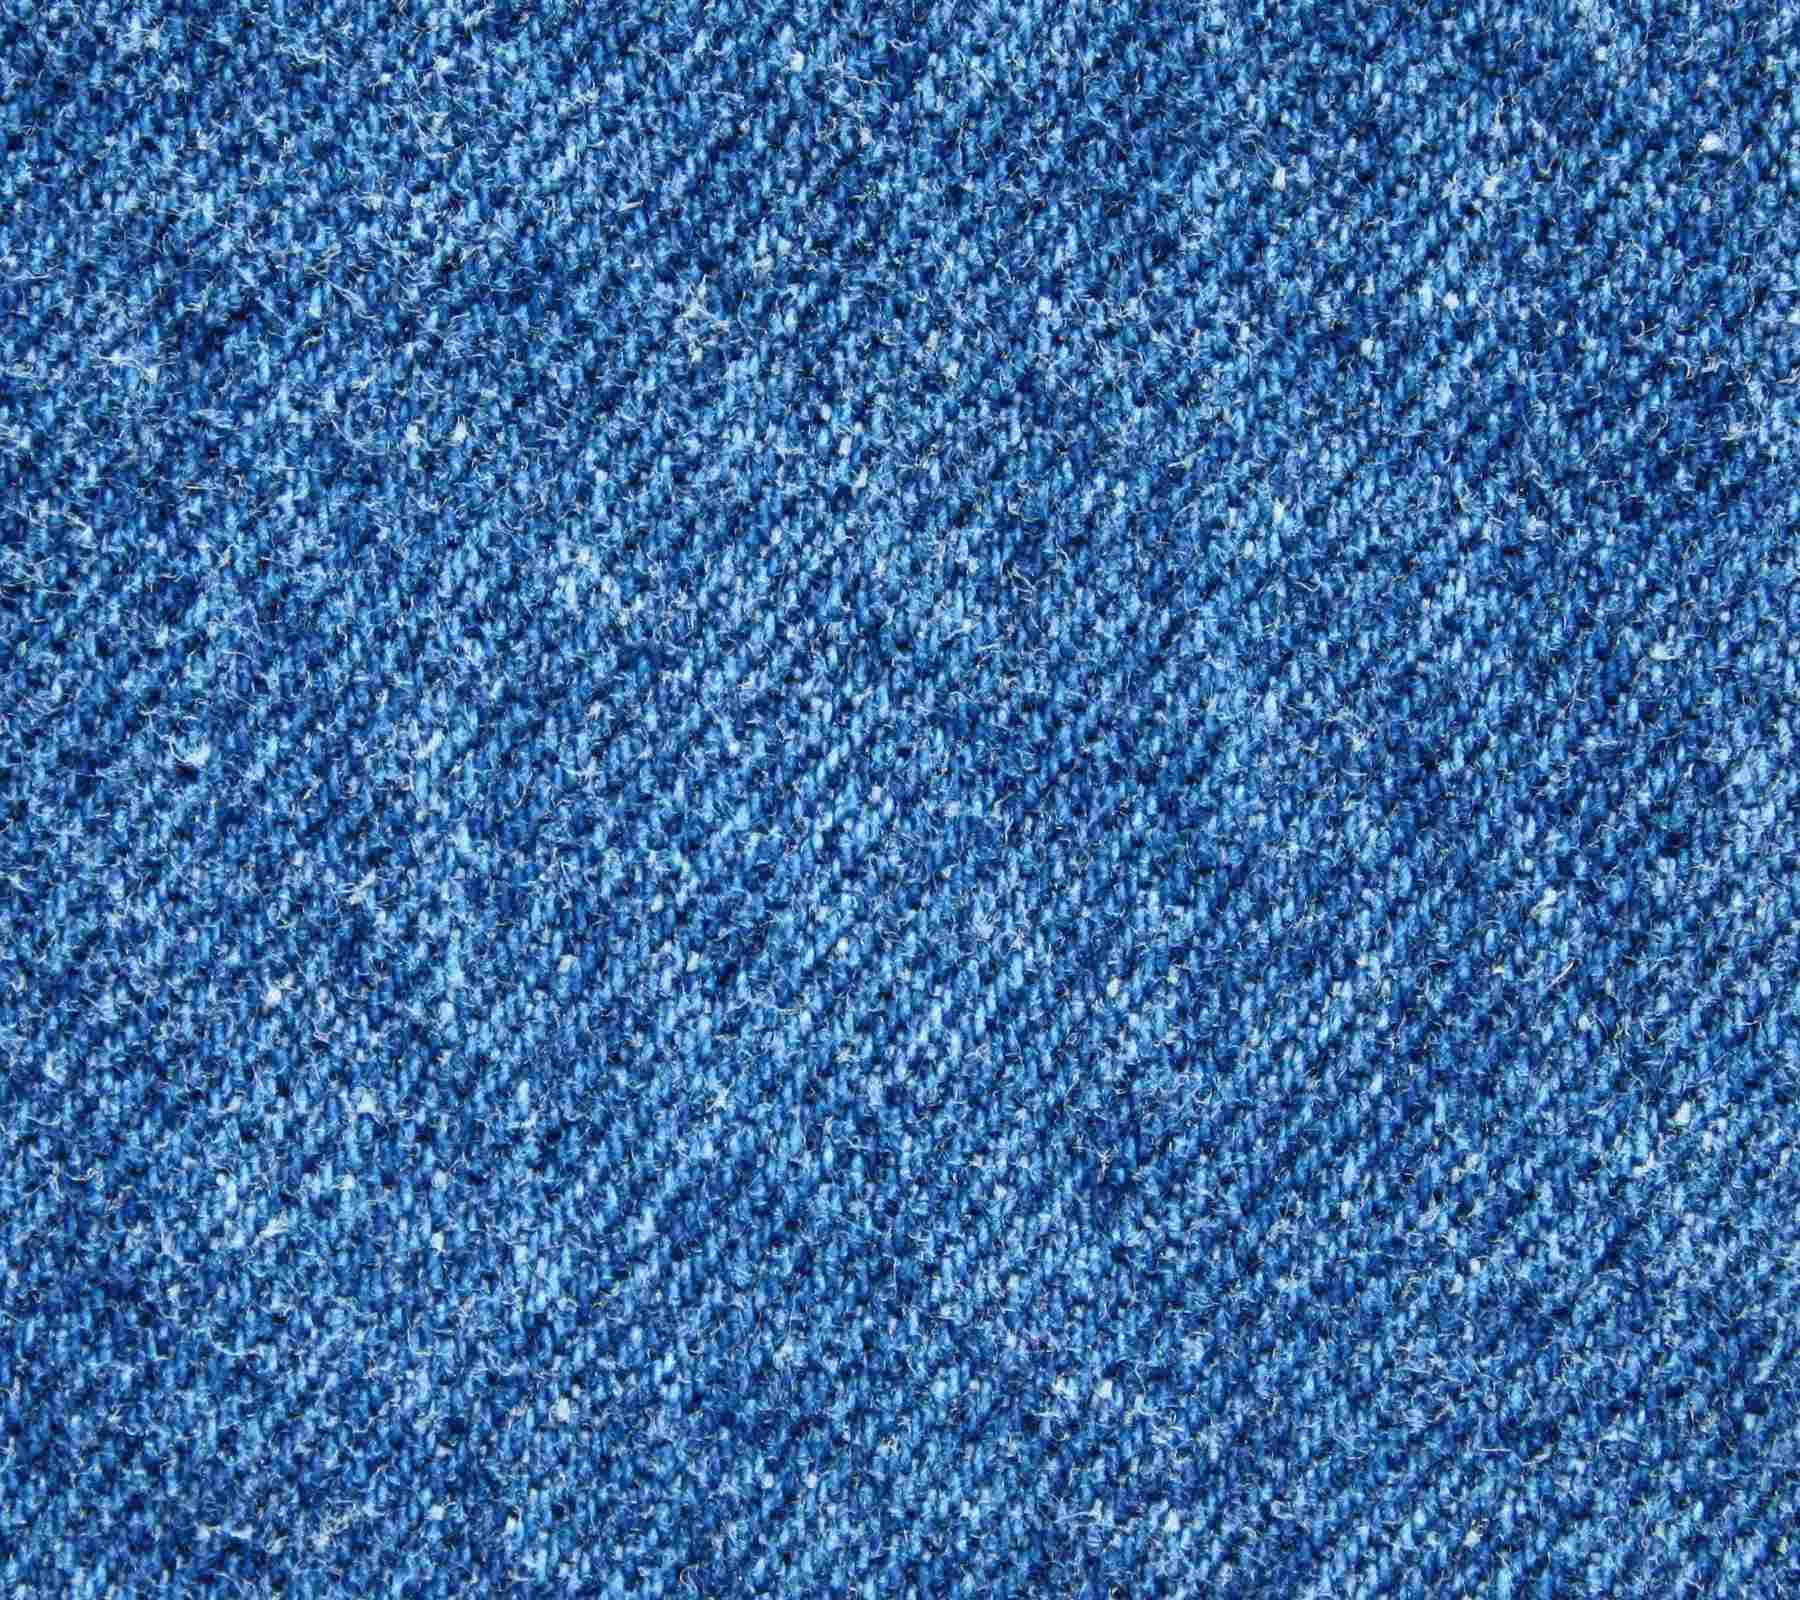 Unelegante Par De Jeans Desgastados De Color Azul Que Tienen Un Atractivo Único Y Vintage.